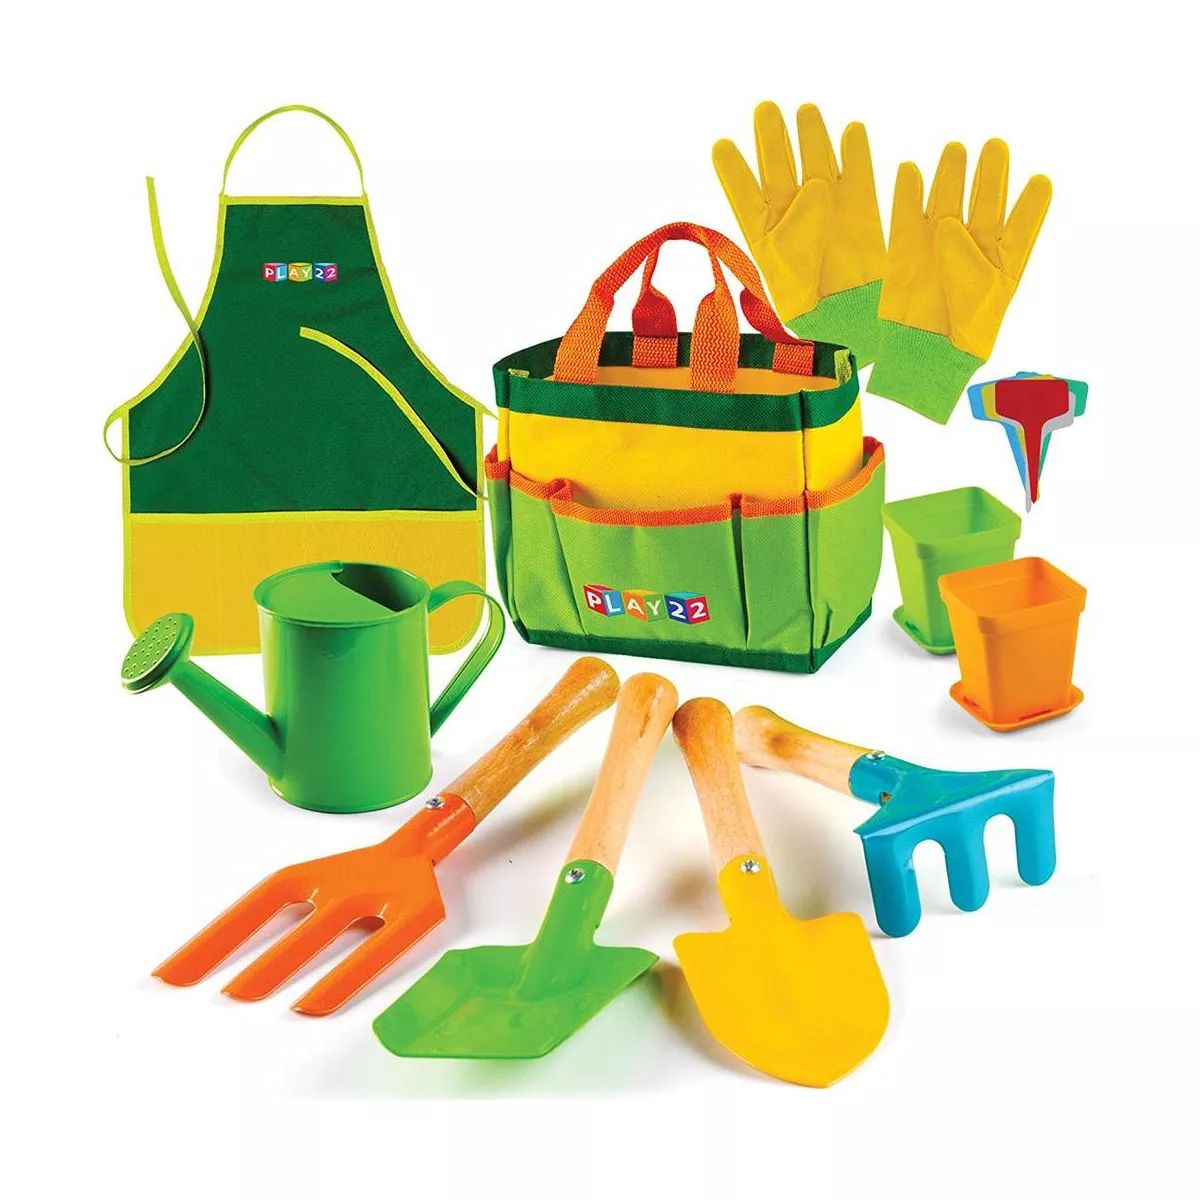 Kids Gardening Tool Set 12 PCS - Kids Gardening Tools with Shovel, Rake, Fork, Trowel, Apron, Glo... | Target